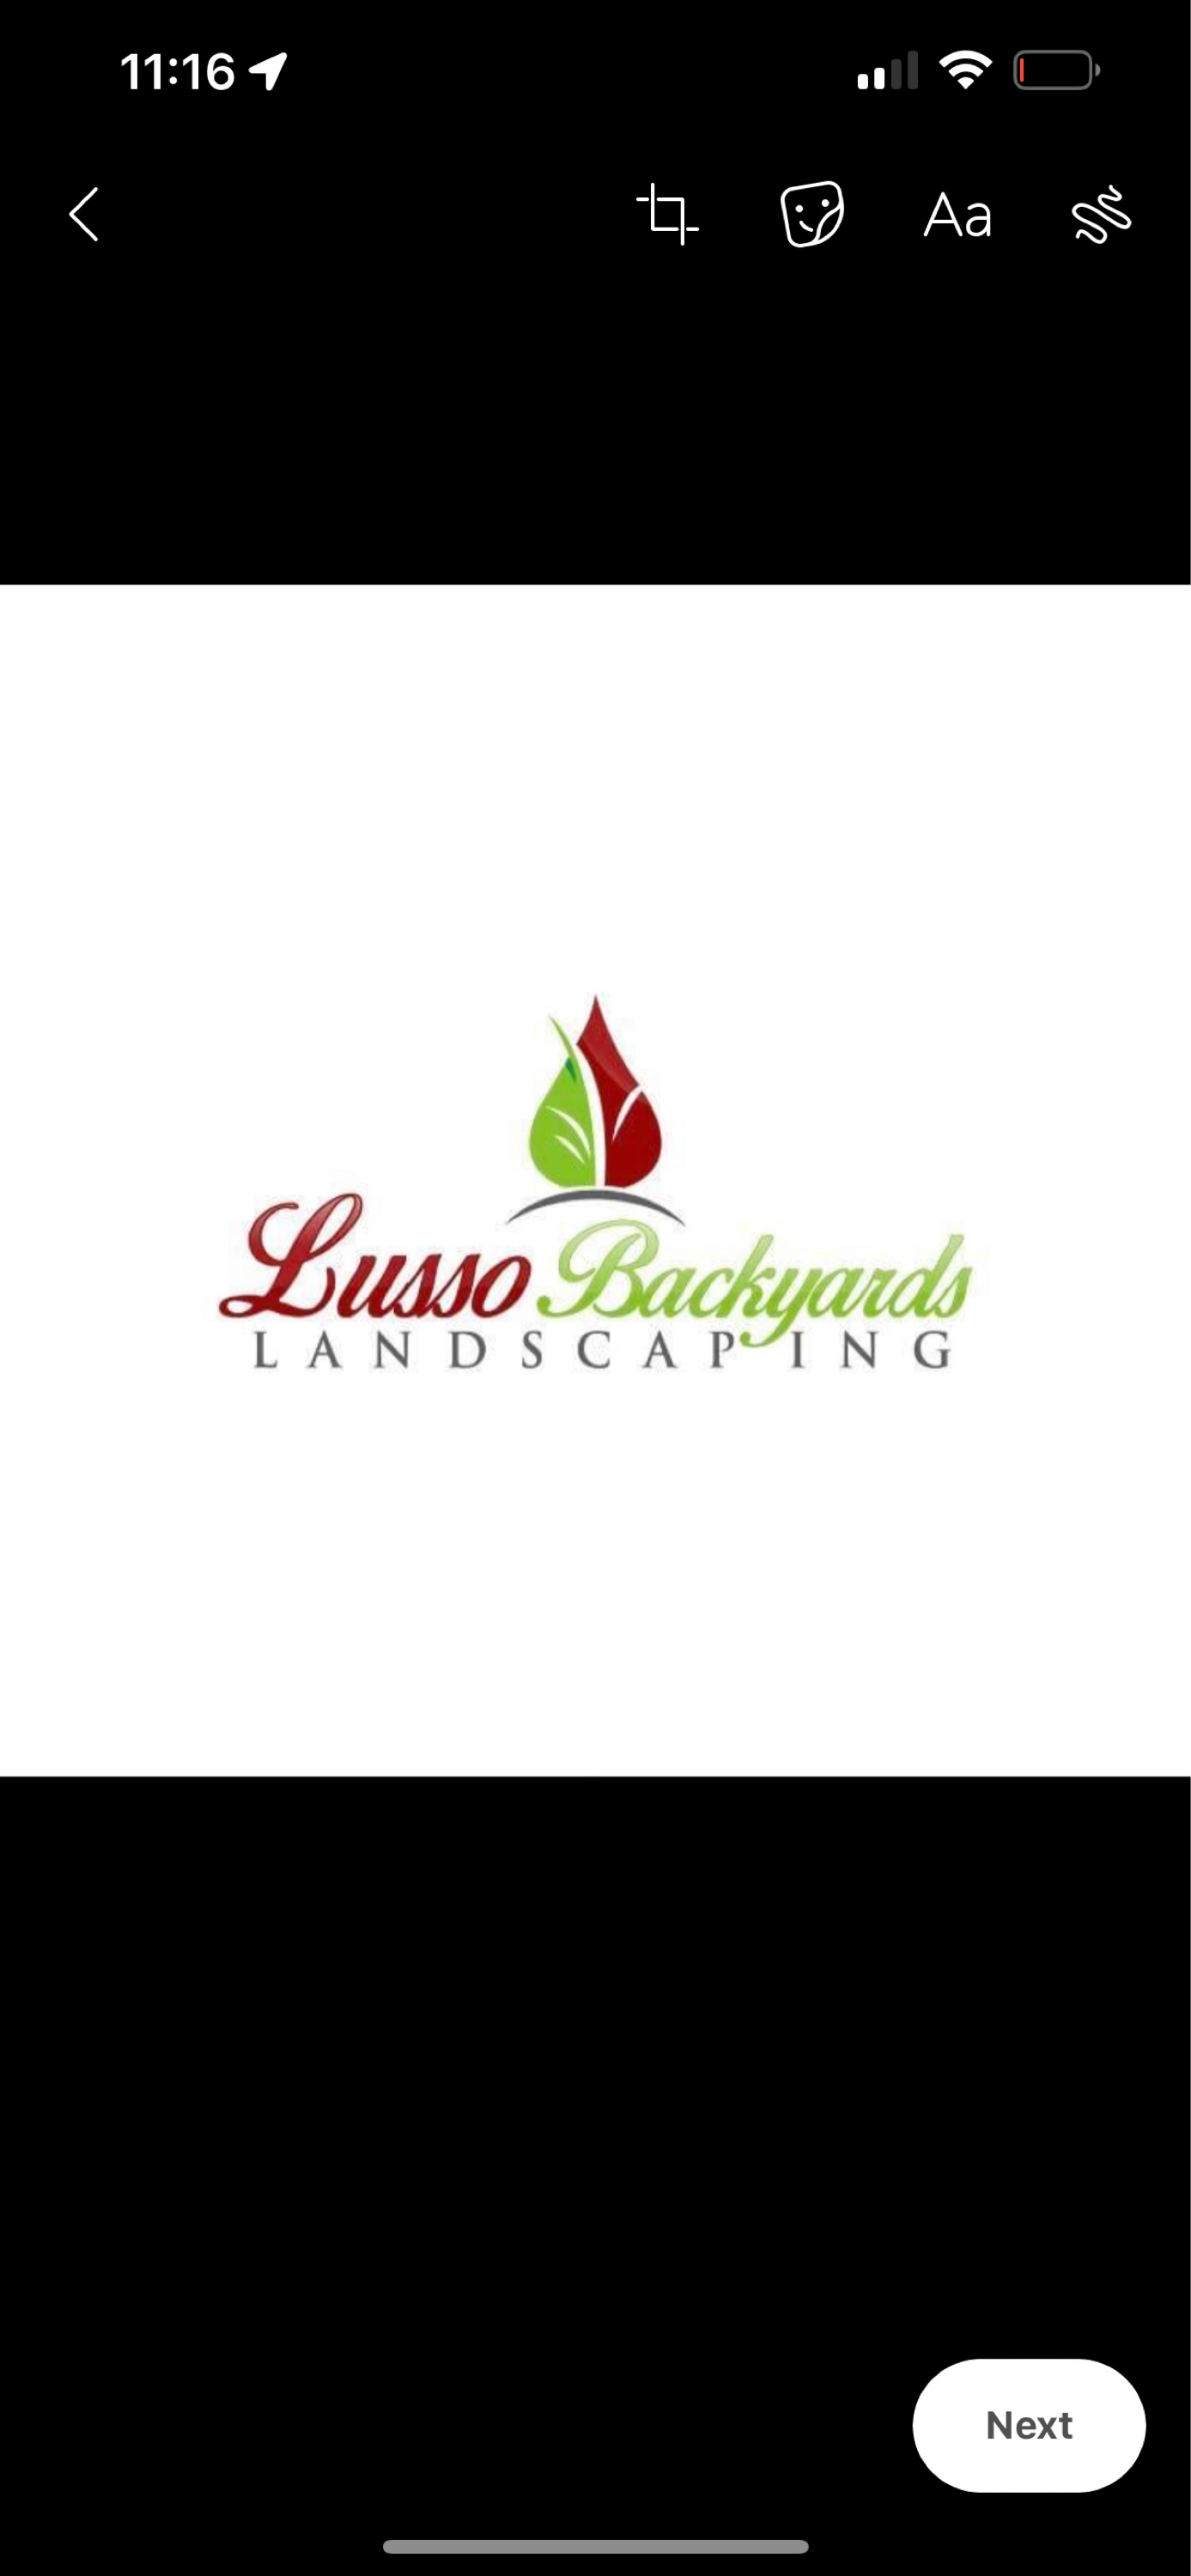 Lusso Backyards Logo